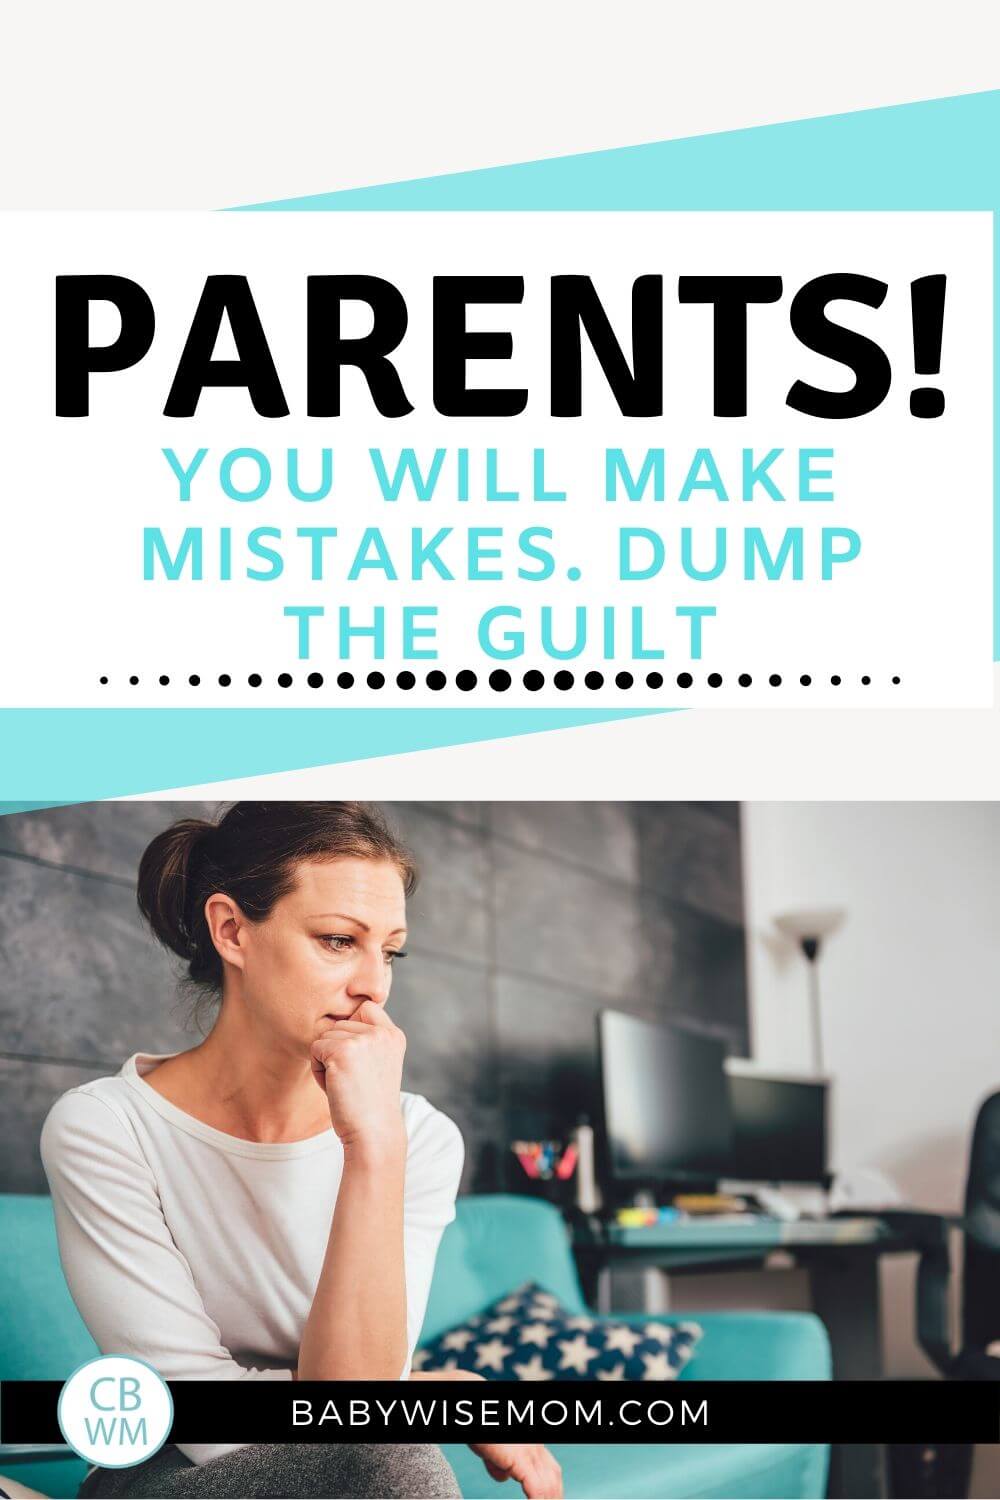 Parents dump the guilt pinnable image